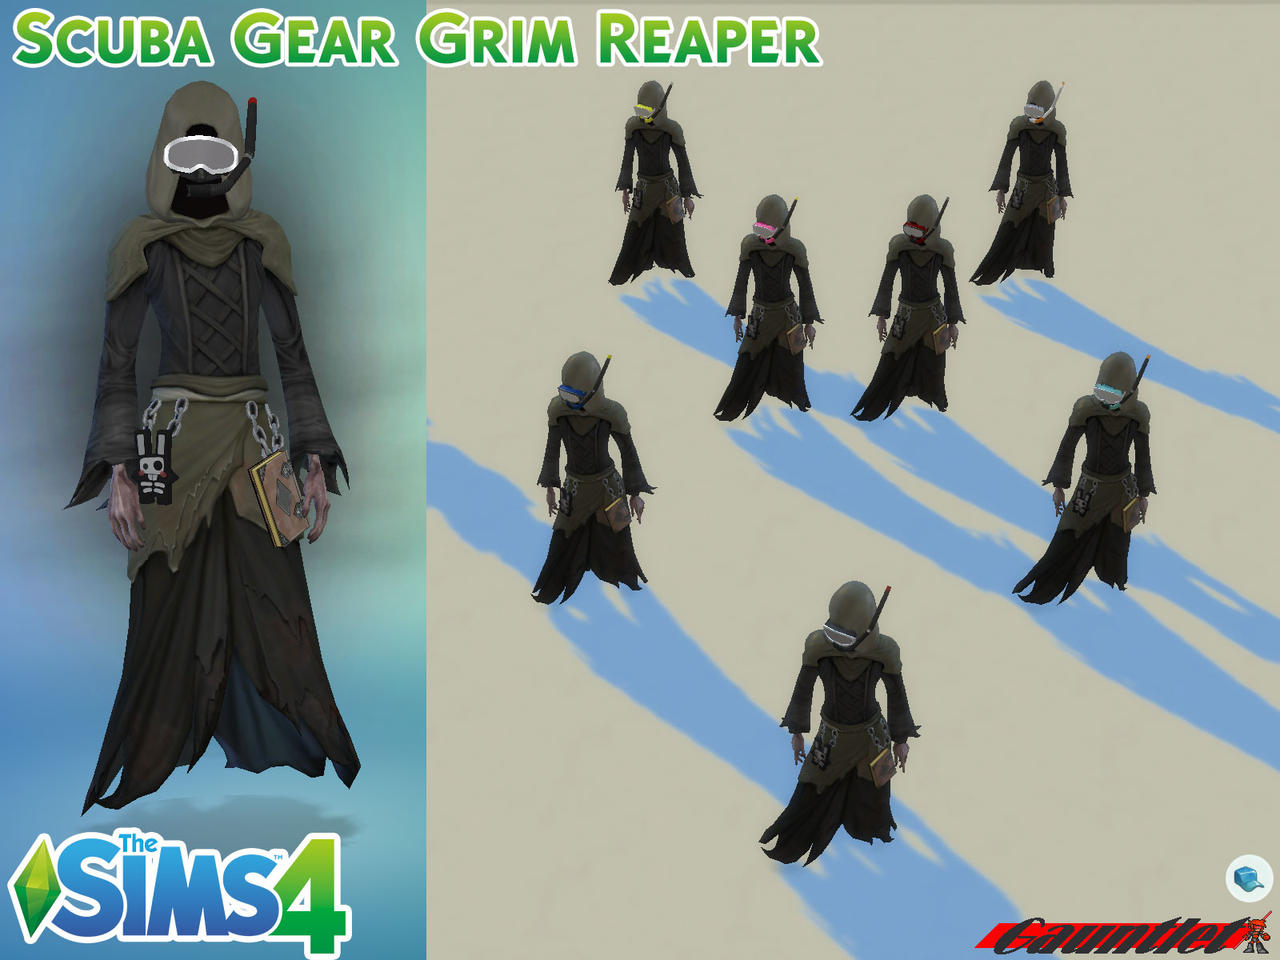 Sims4 Scuba Gear Grim Reaper by Gauntlet101010 on DeviantArt